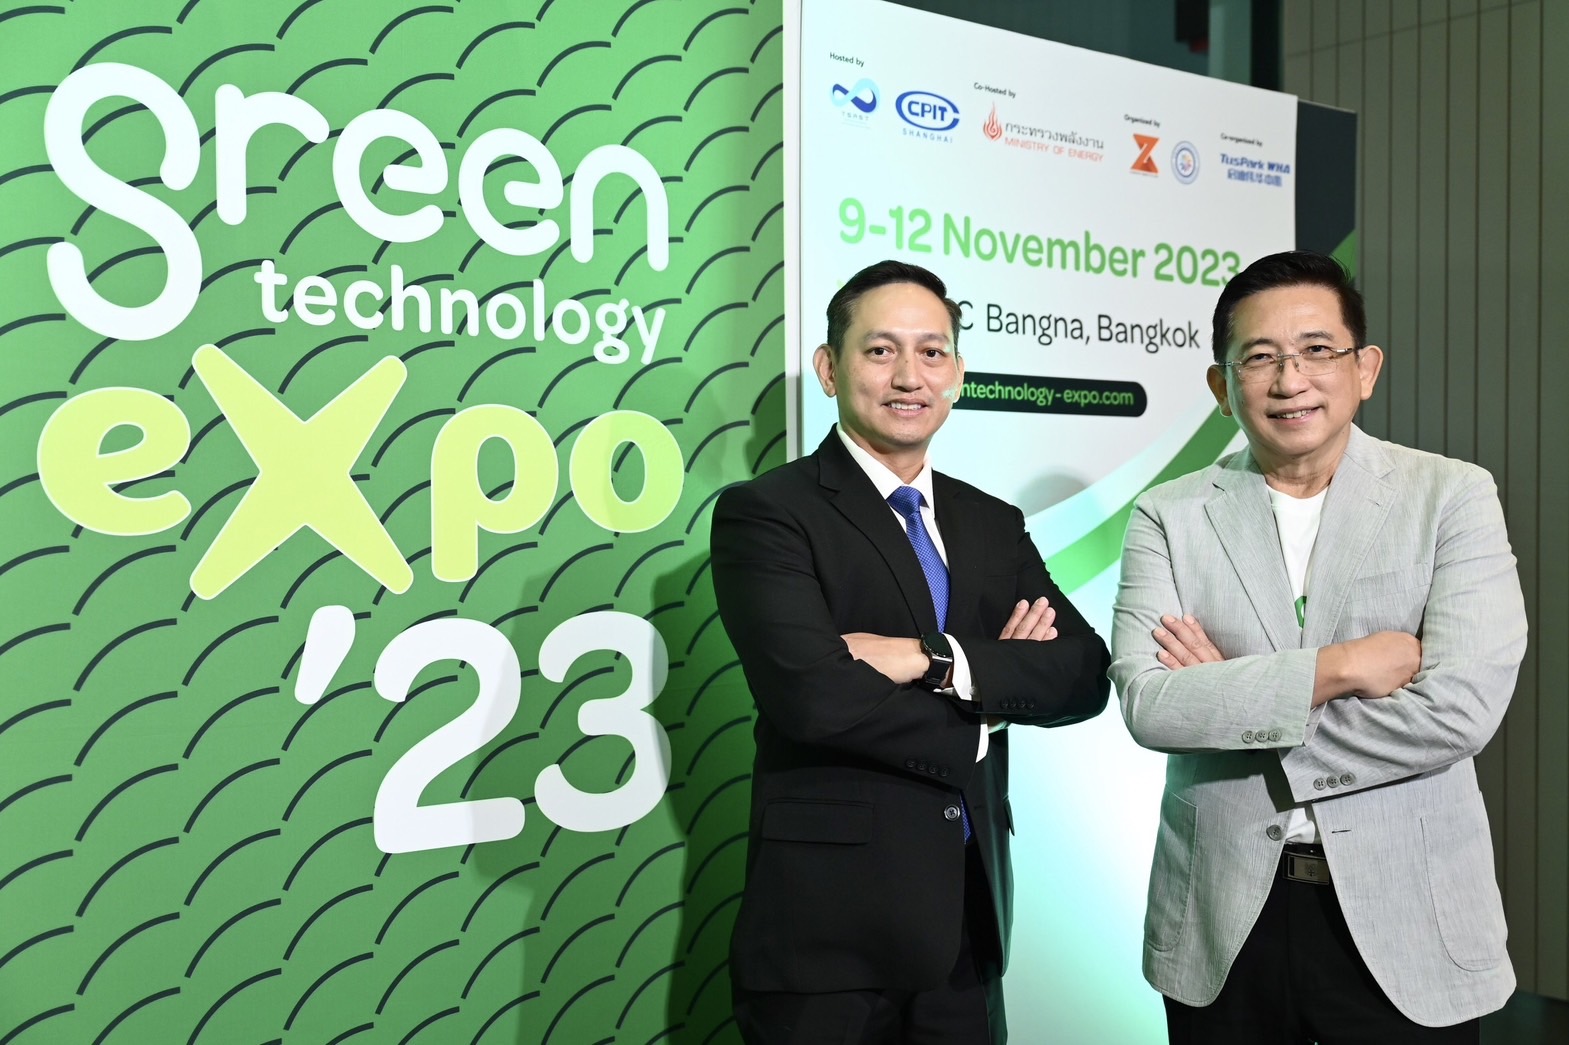 ก.พลังงาน ร่วมกับ สมาคมวิทยาศาสตร์และเทคโนโลยี ไทย-จีน (TSAST) และ CAS-ICCB จัดงาน “2023 Green Technology Expo” เดินหน้ากำหนดแผนลดปล่อย GHG โลกร้อน พร้อมหนุนไทยเป็นศูนย์กลางผลิตยานยนต์ไฟฟ้า